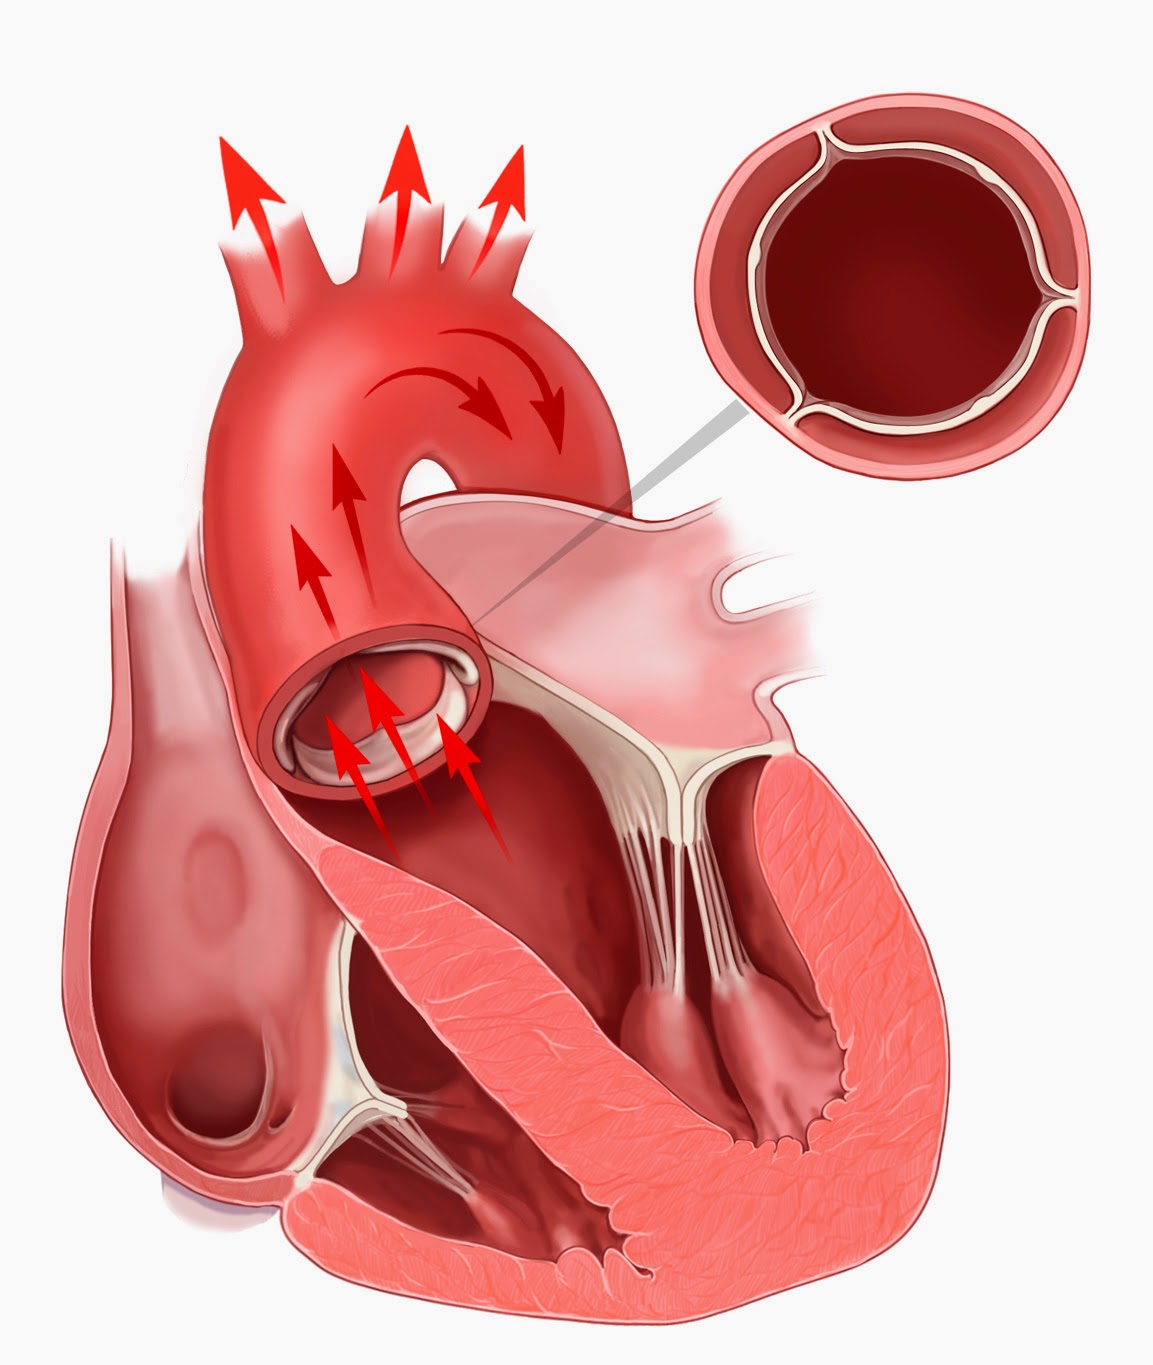 Сердечный стеноз. Метоальгыц аортальный клапаны. Стеноз митрального и аортального клапана. Порок сердца стеноз аортального клапана. Митральный и аортальный клапан.